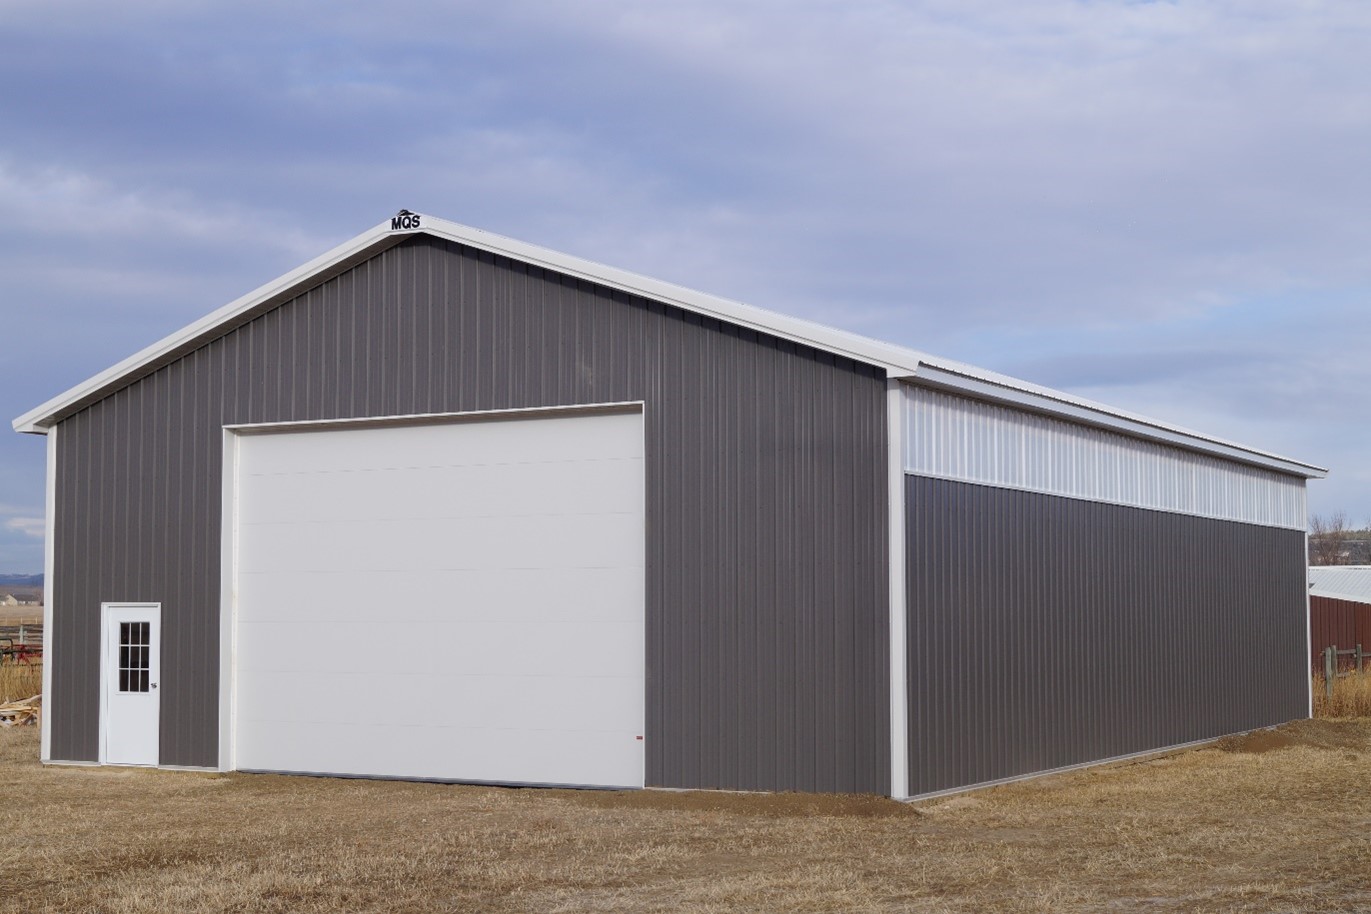 19 Reasons to Choose Post Frame Steel Buildings in Montana